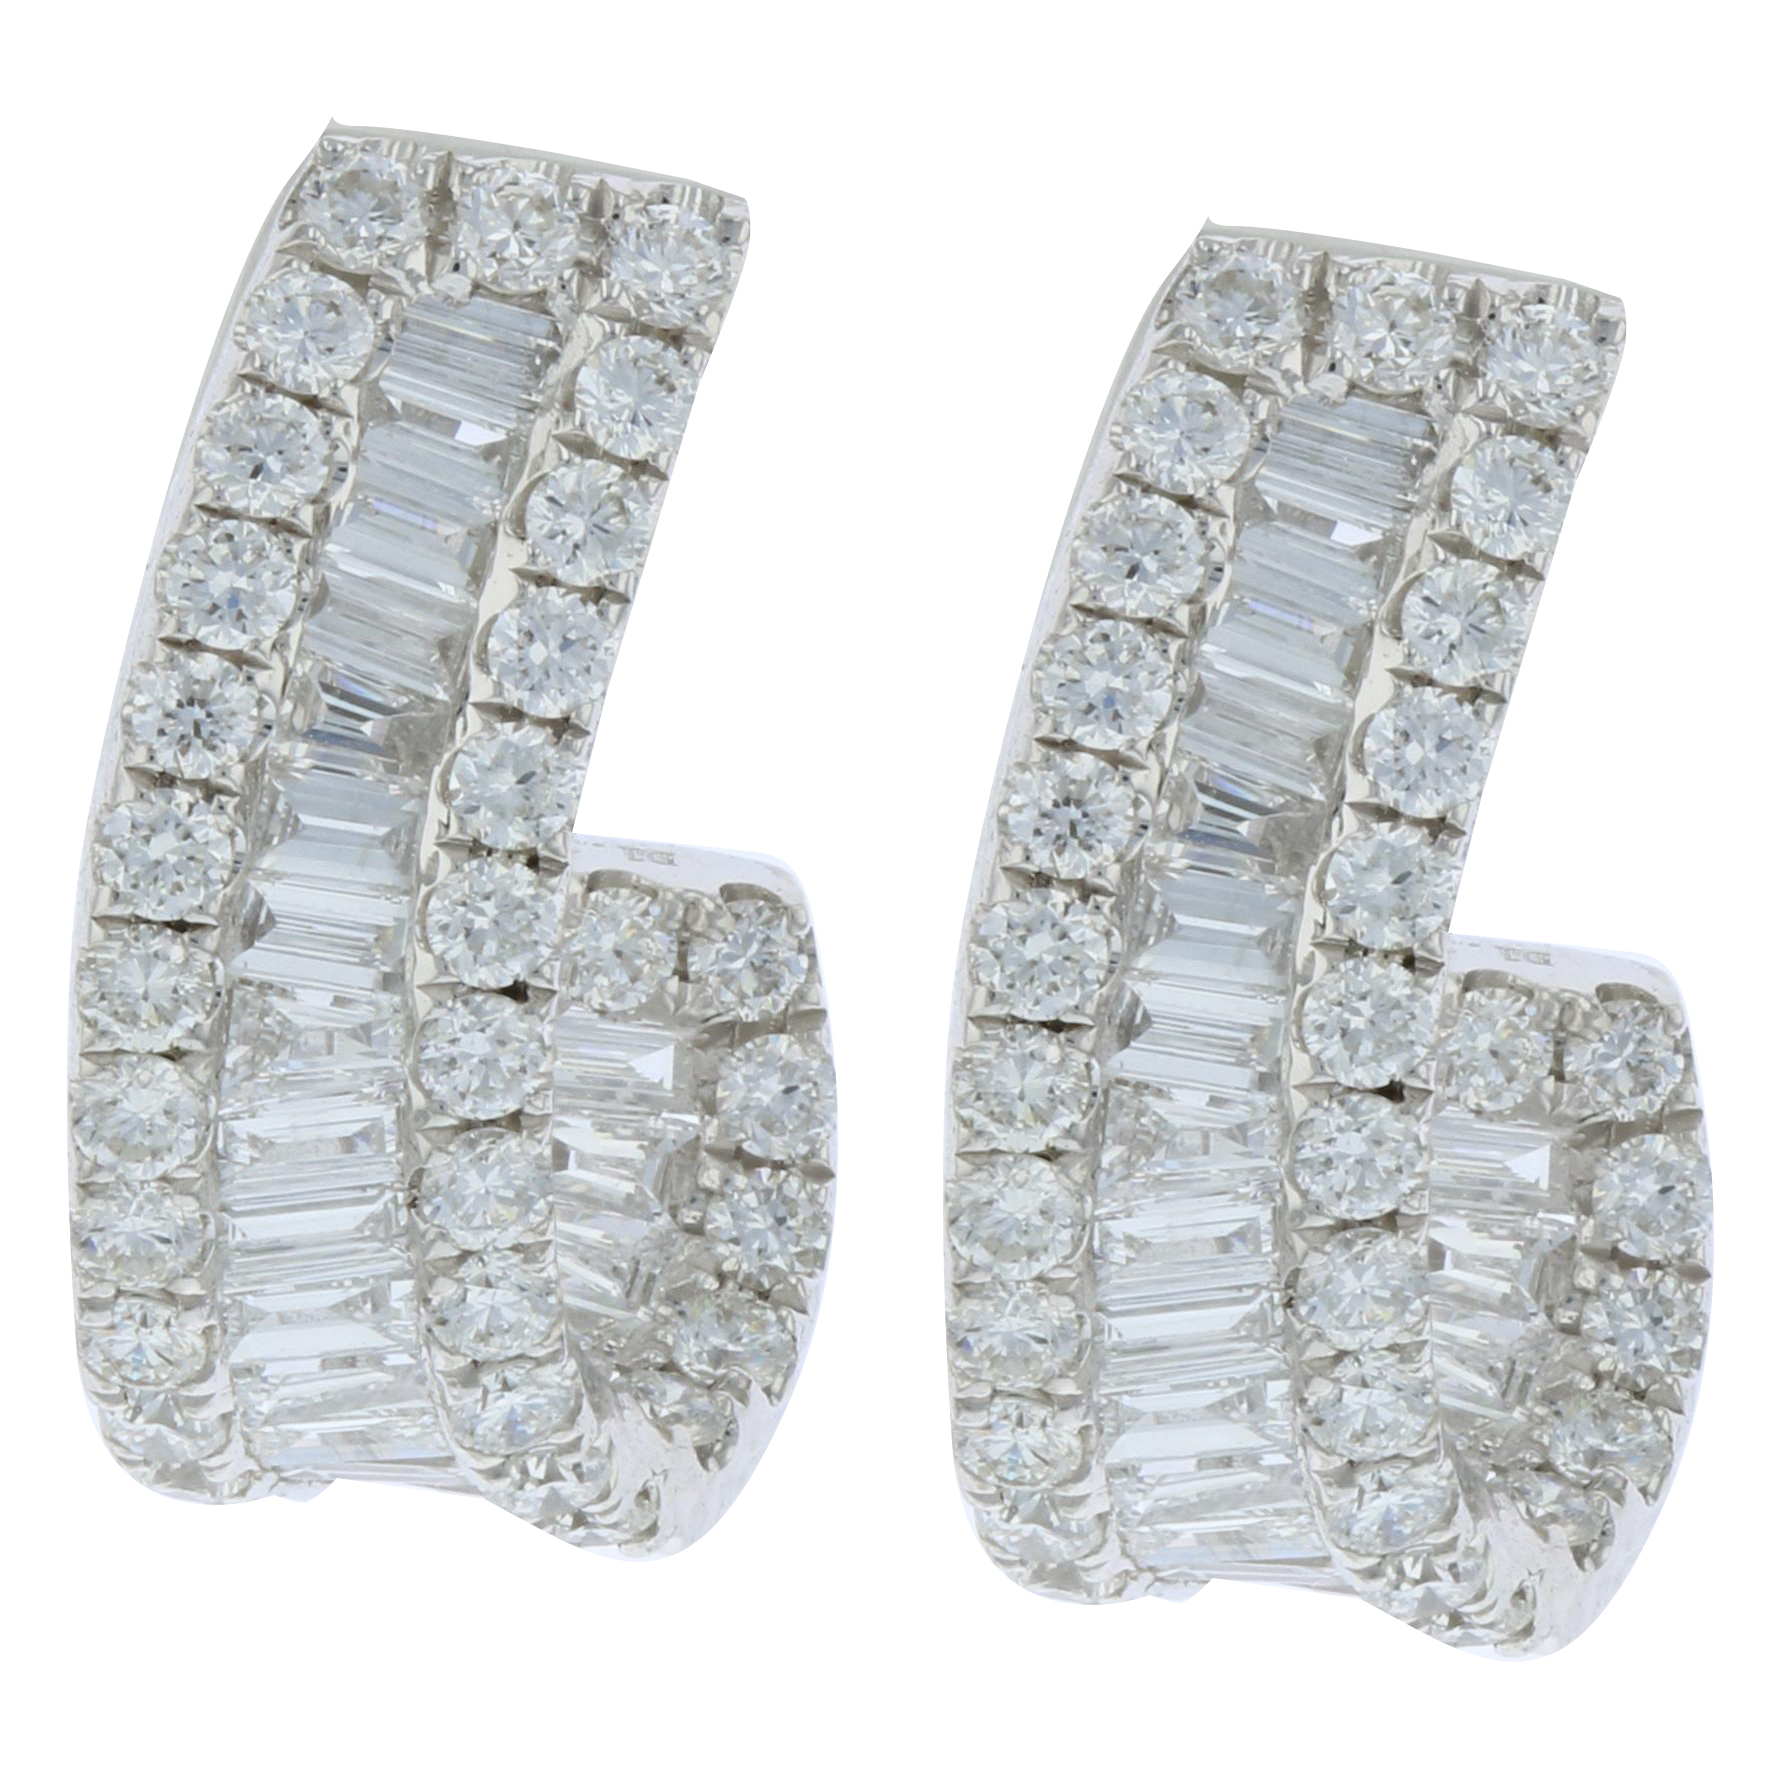 View 1.30ctw Diamond Half Hoop Earrings in 18k White Gold